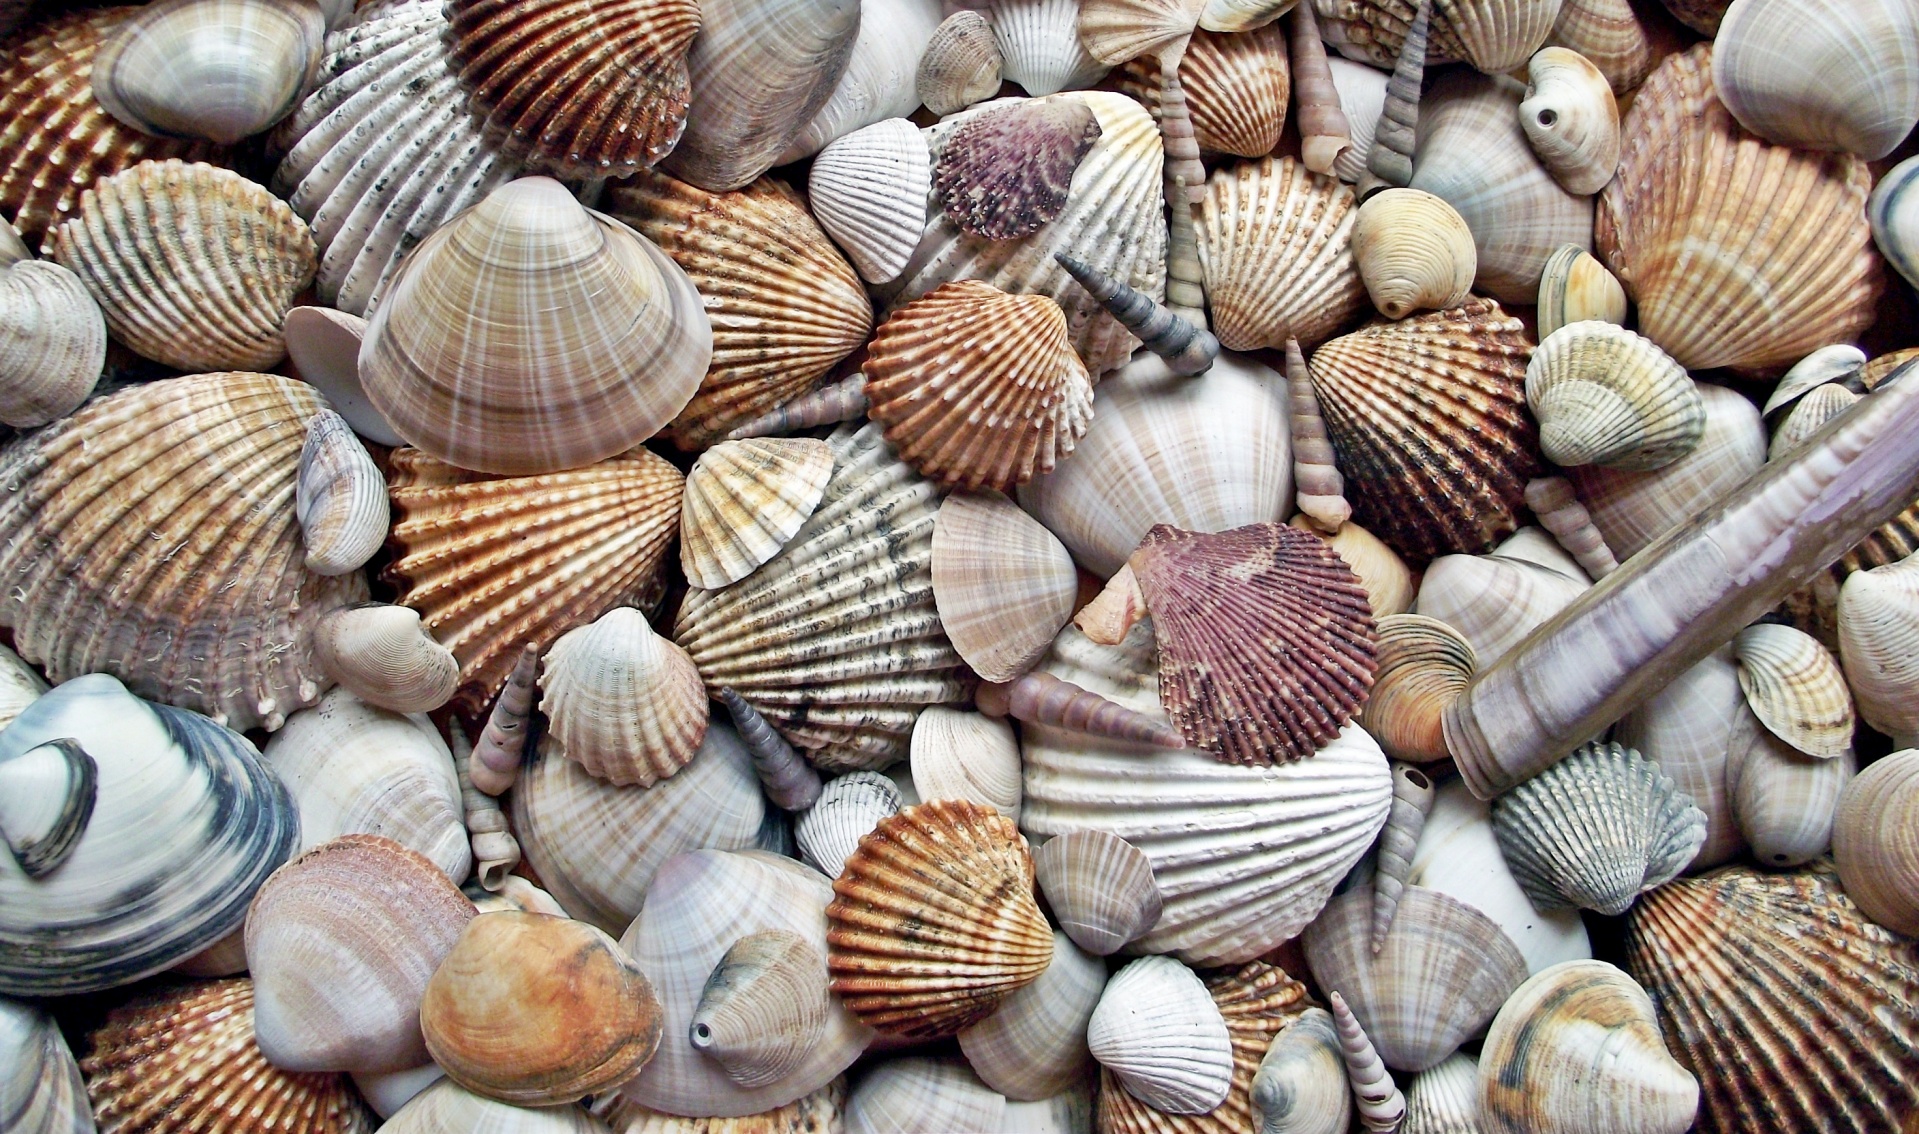 A pile of seashells